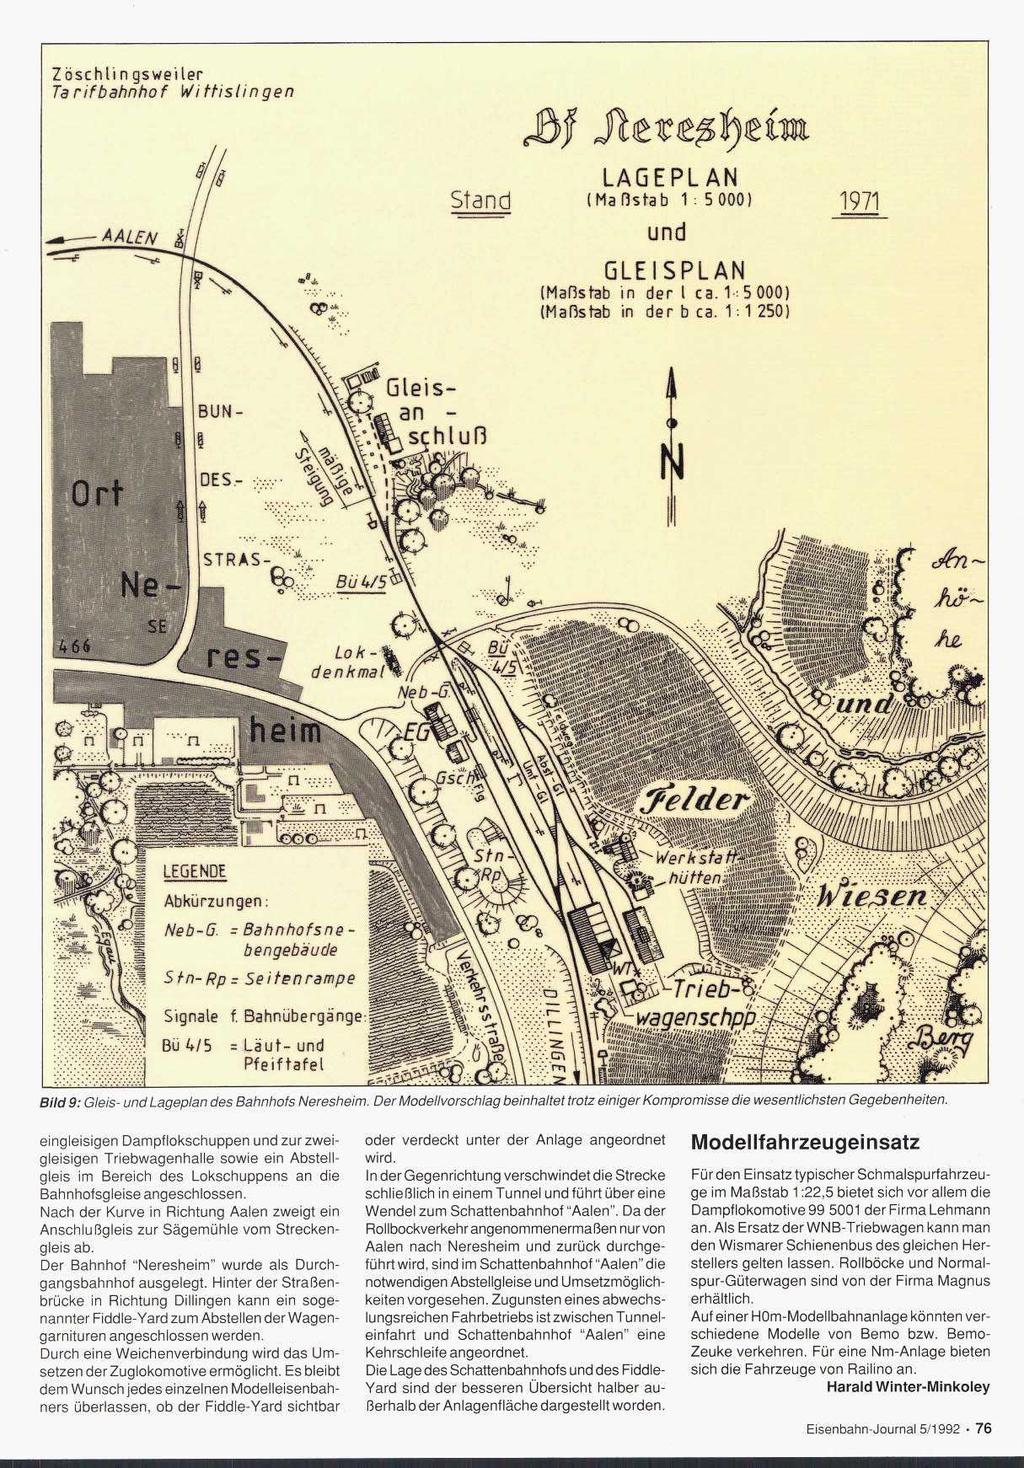 urt Ne-! SI ~ Bild 9: Gleis- und Lageplan des Bahnhofs Neresheim. Der Modellvorschlag beinhaltet trotz einiger Kompromisse die wesentlichsten Gegebenheiten.